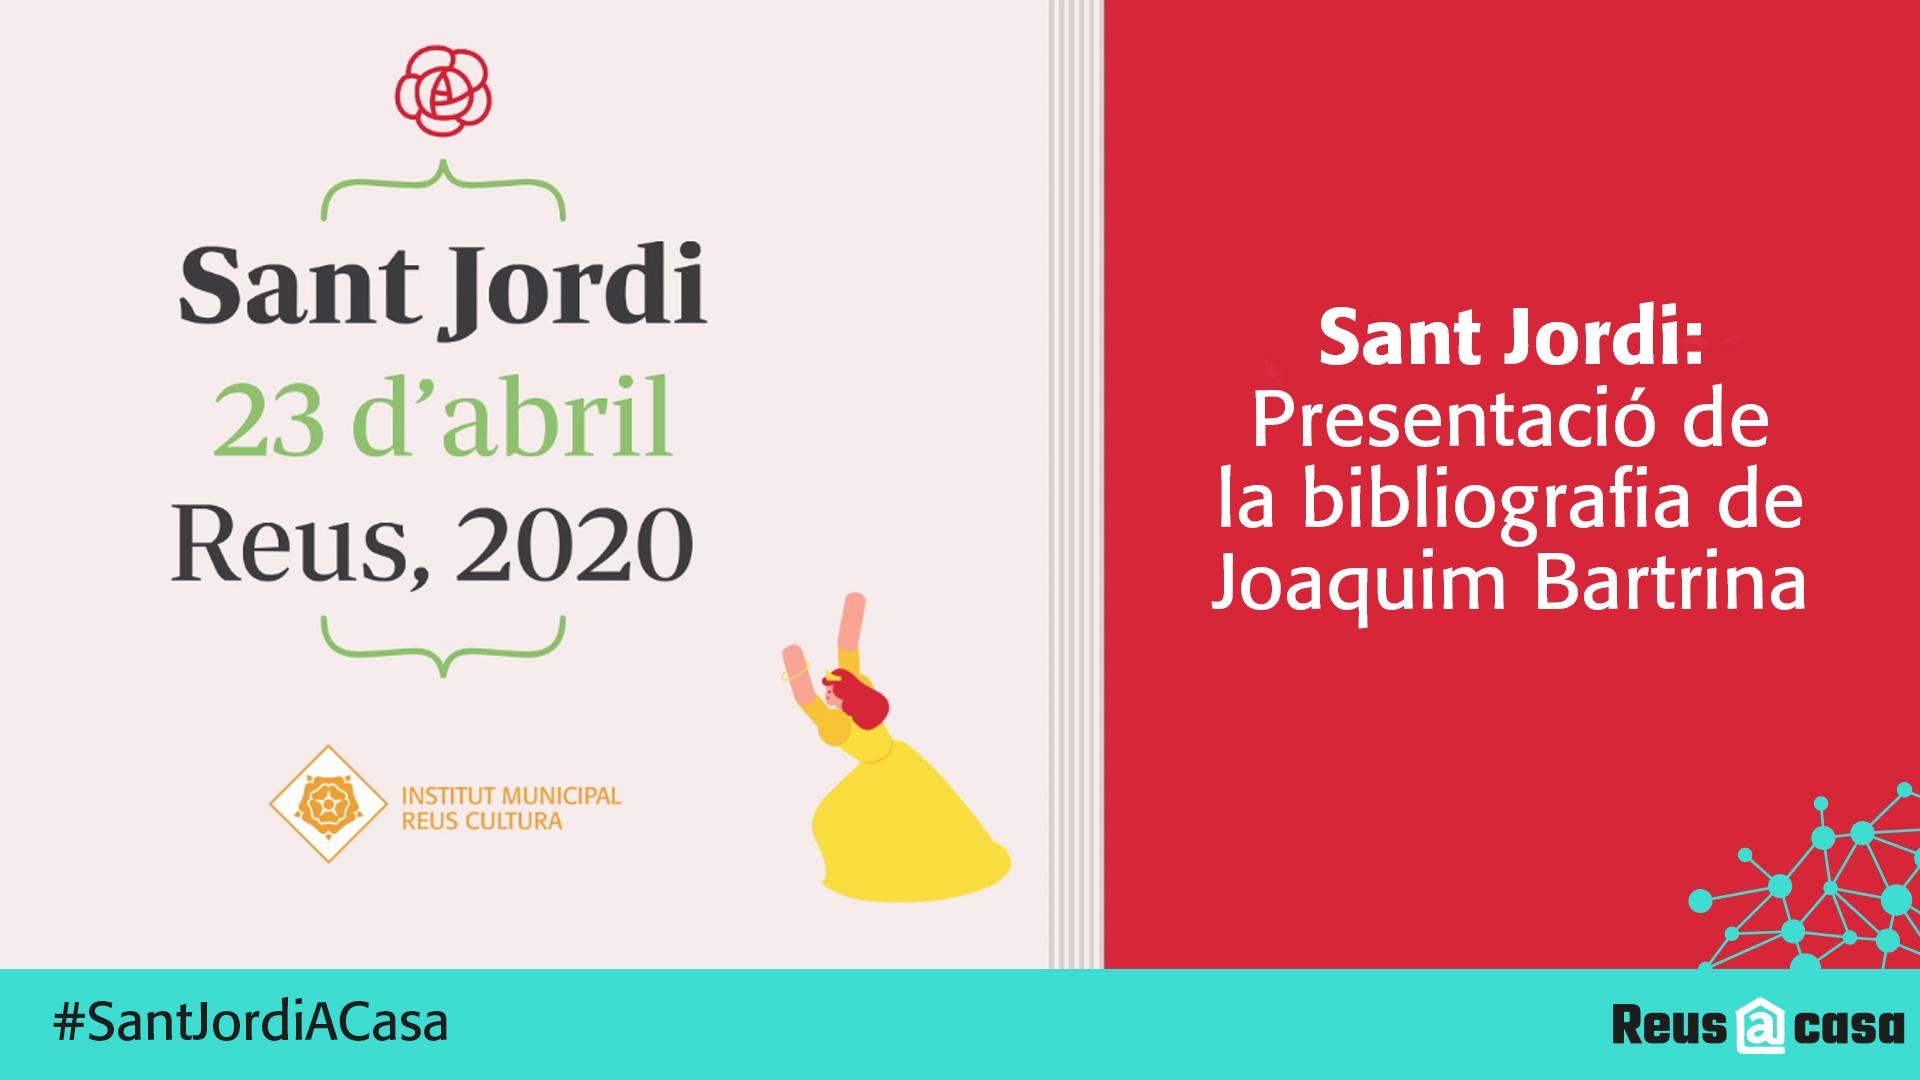 Sant Jordi: Presentació de la bibliografia de Joaquim Bartrina